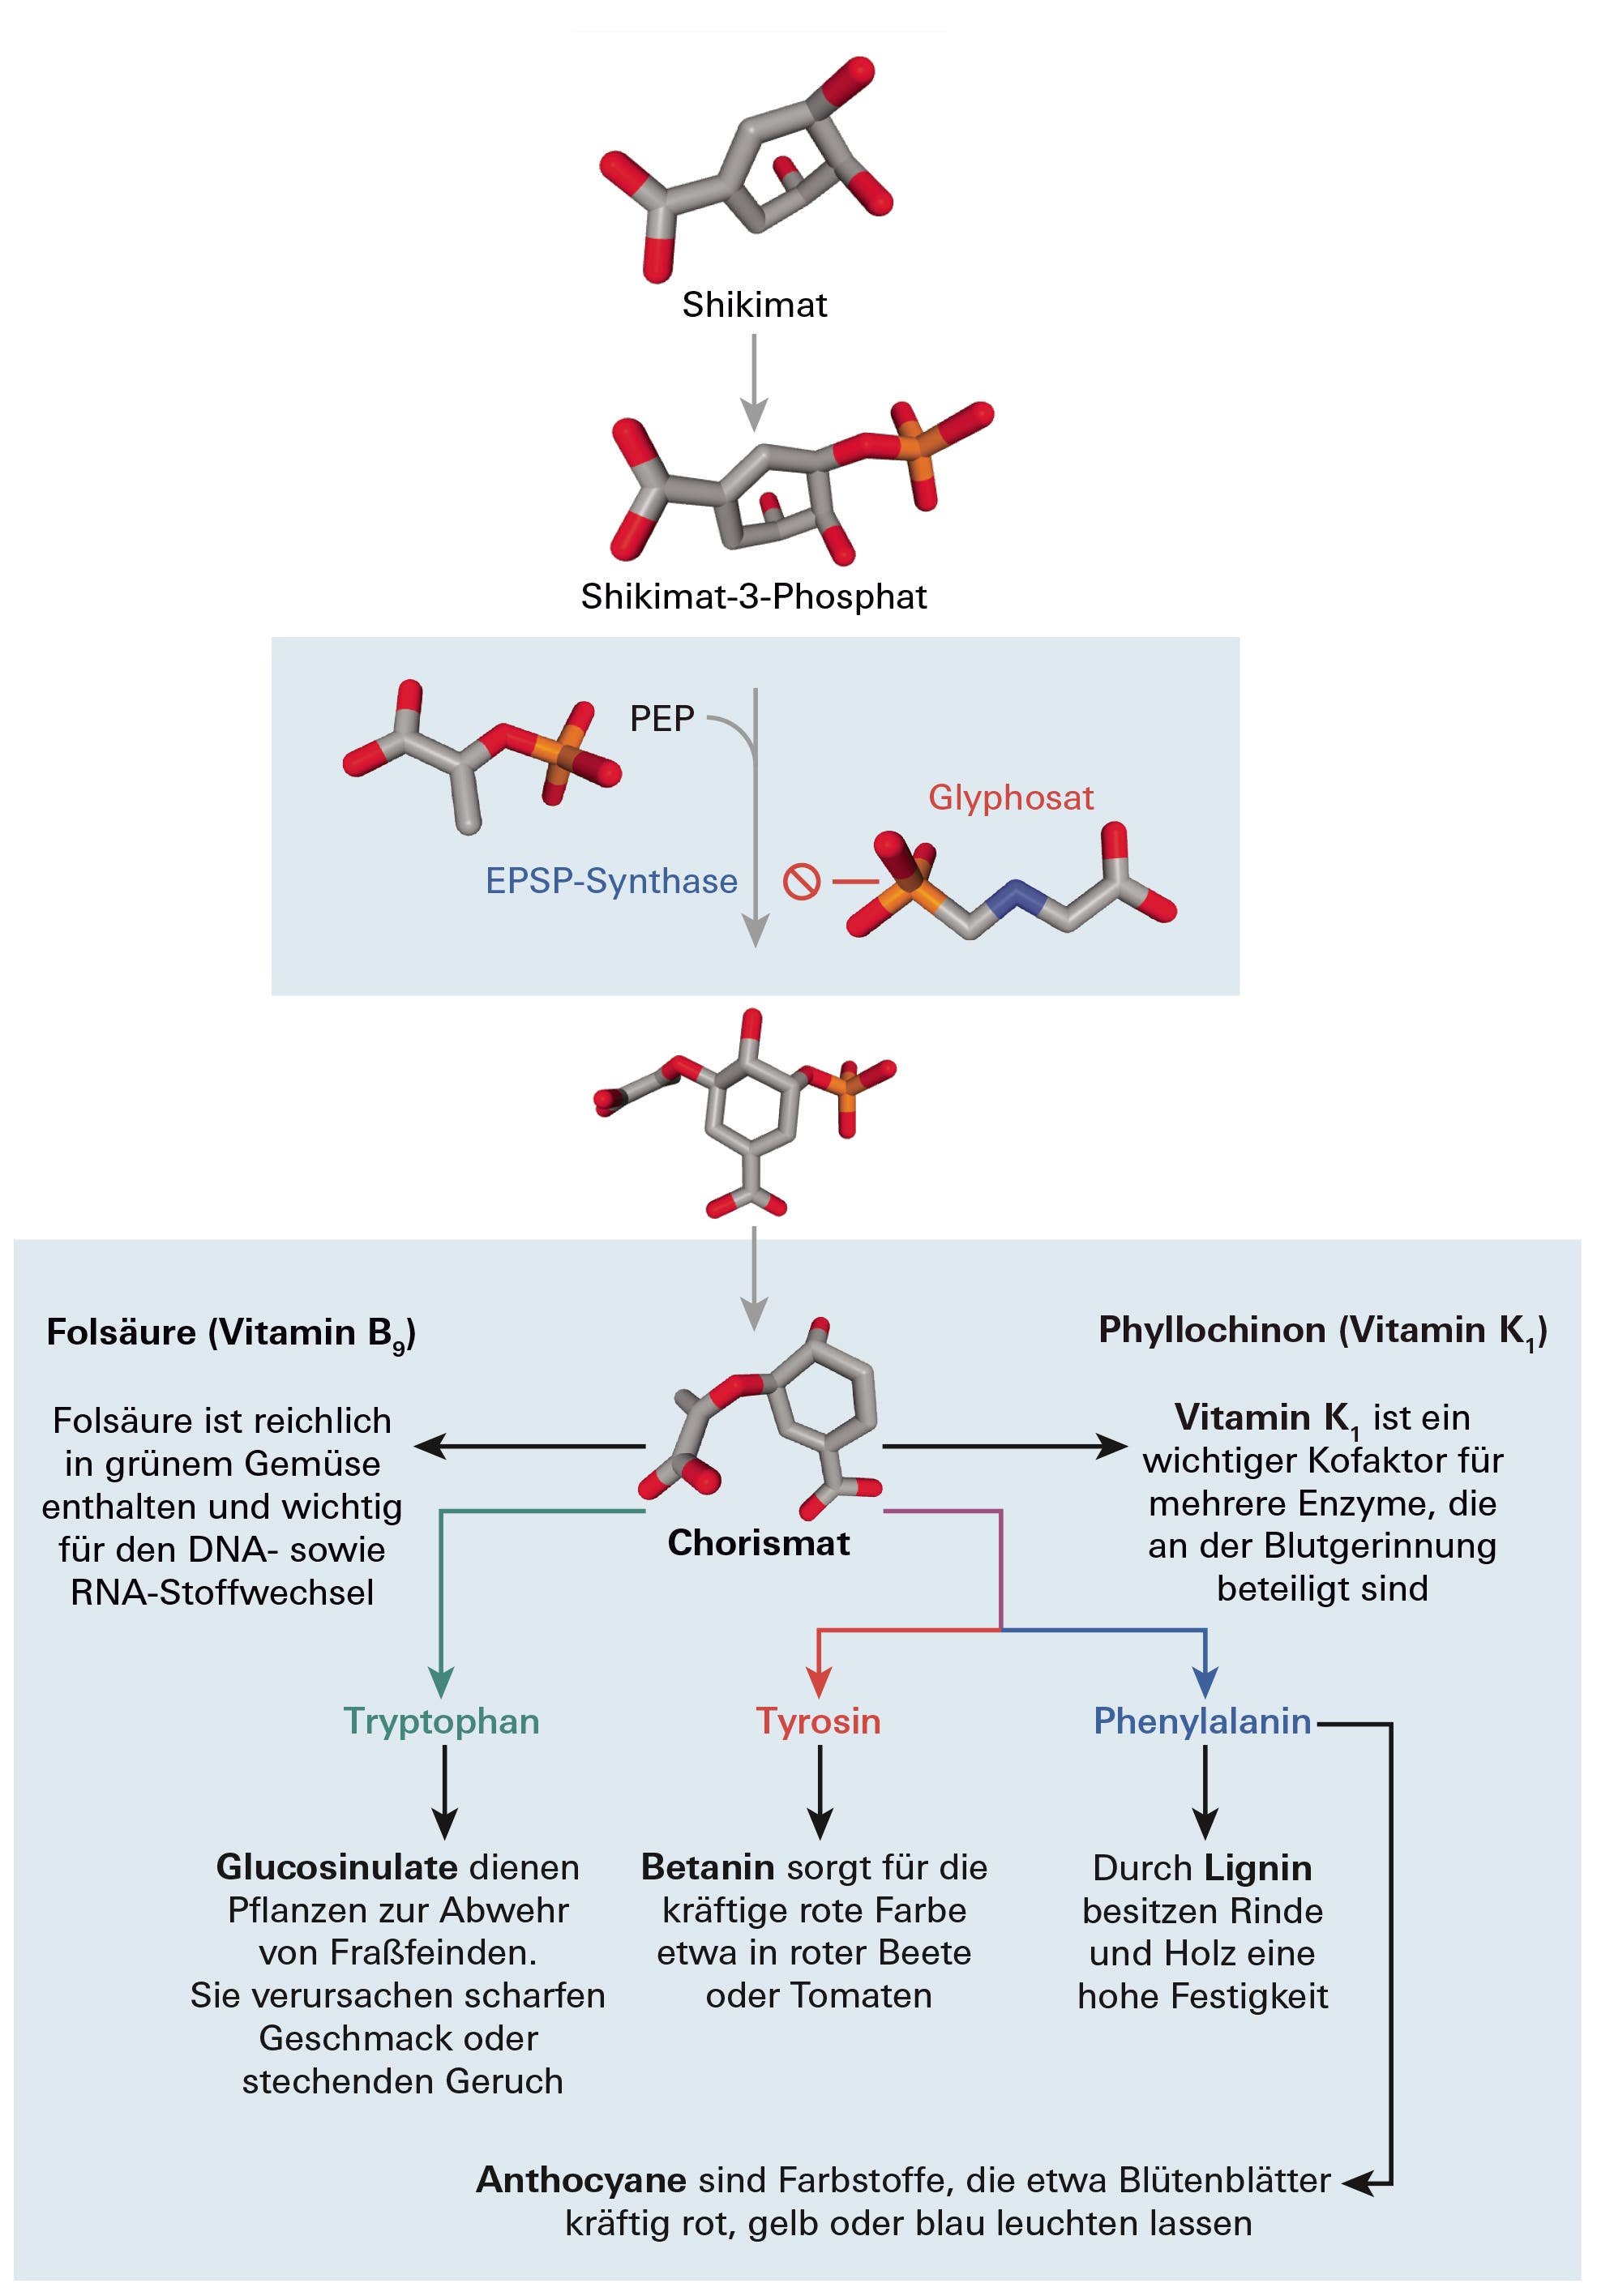 Infografik: enzymkataly­sierte Umsetzung von Shikimat­ durch das Enzym EPSP-­Synthase und wie Glyphosat an diesem angreift